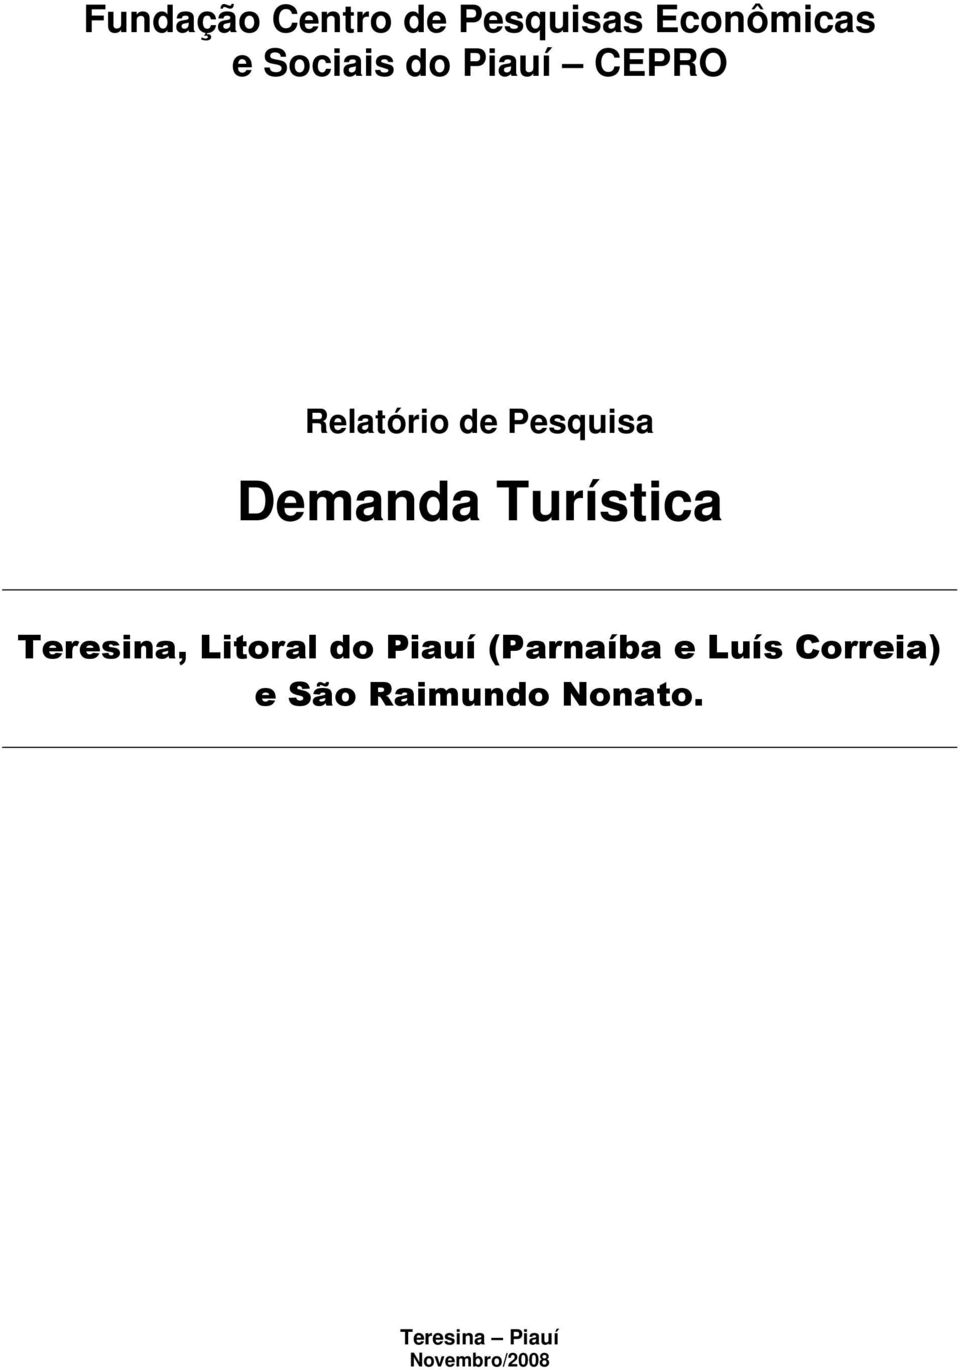 Teresina, Litoral do Piauí (Parnaíba e Luís Correia)